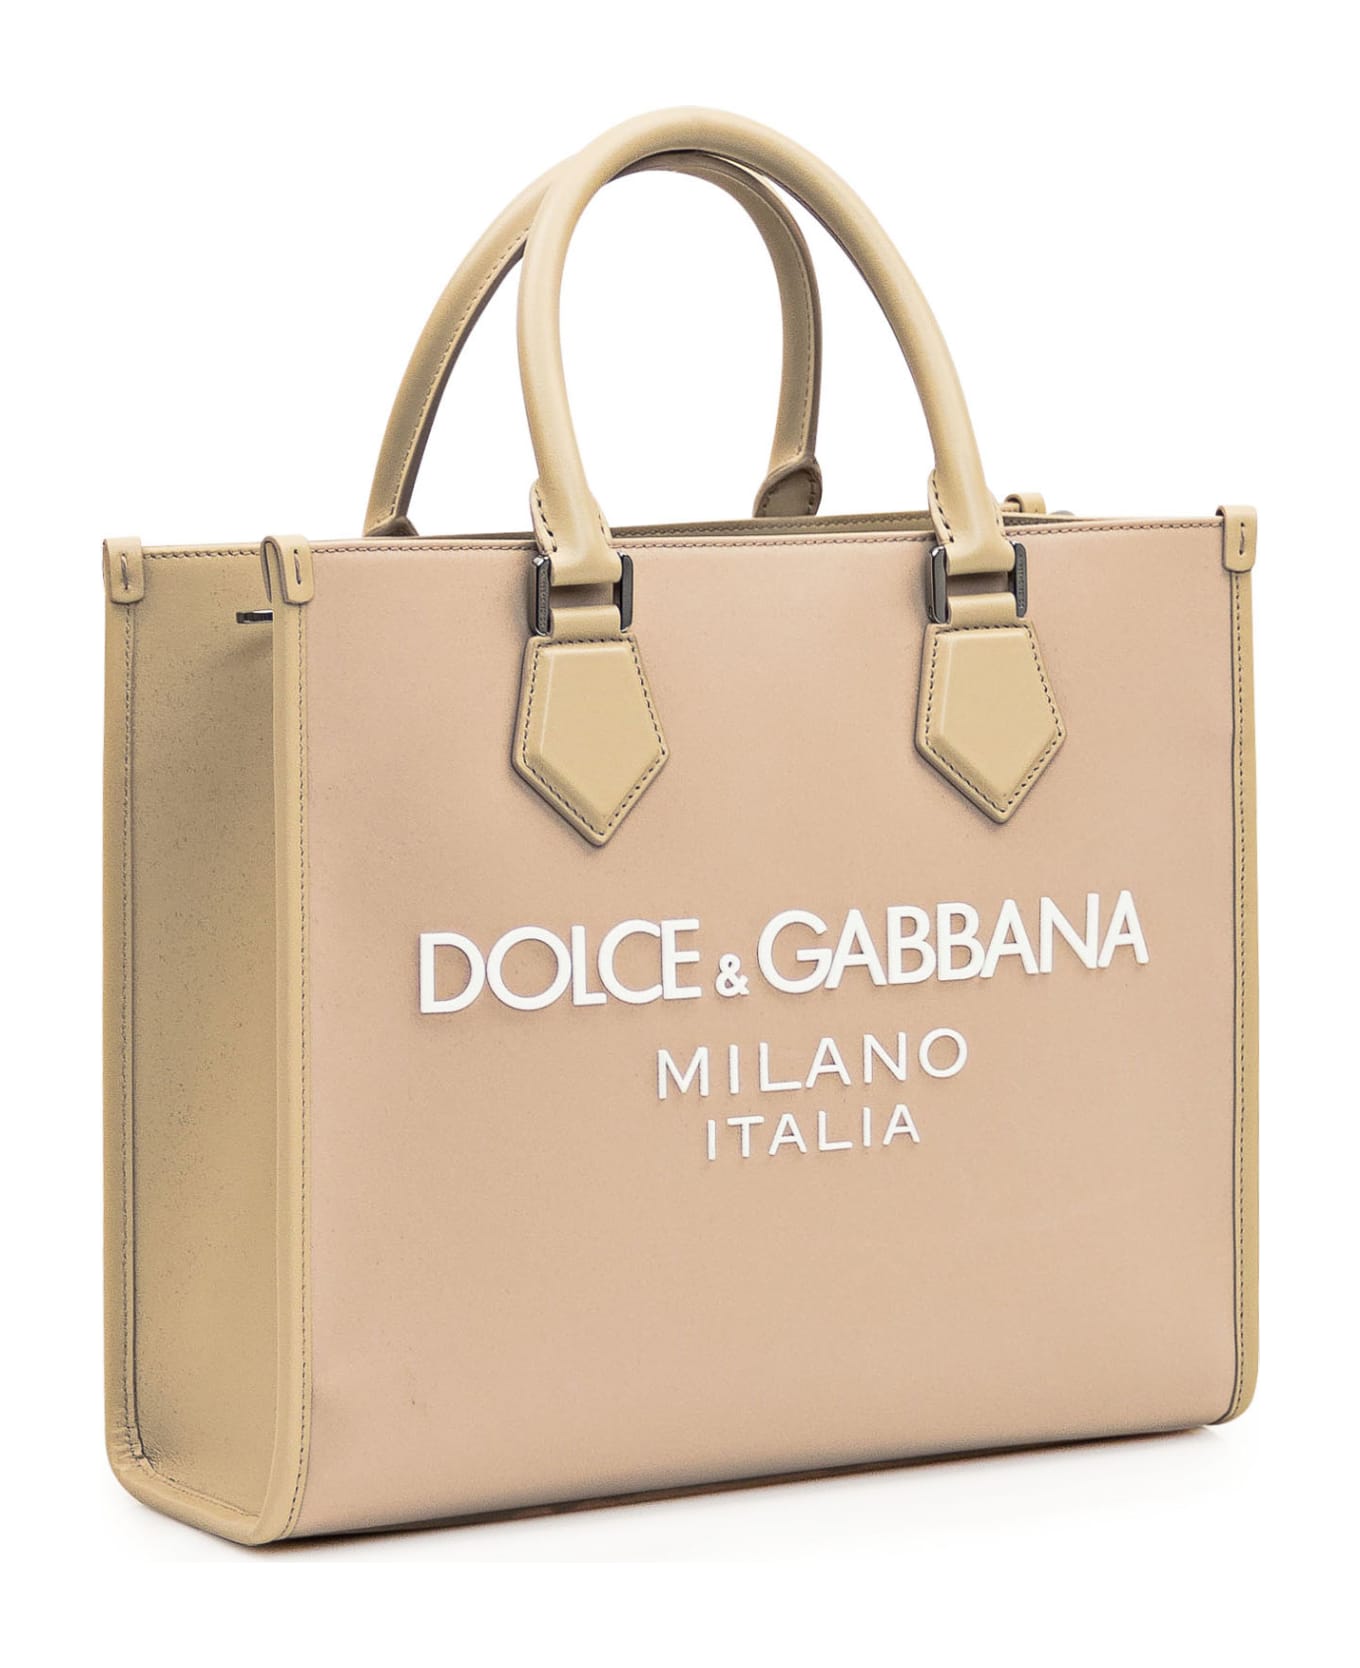 Dolce & Gabbana Shopping Bag With Logo - Desert/Beige トートバッグ